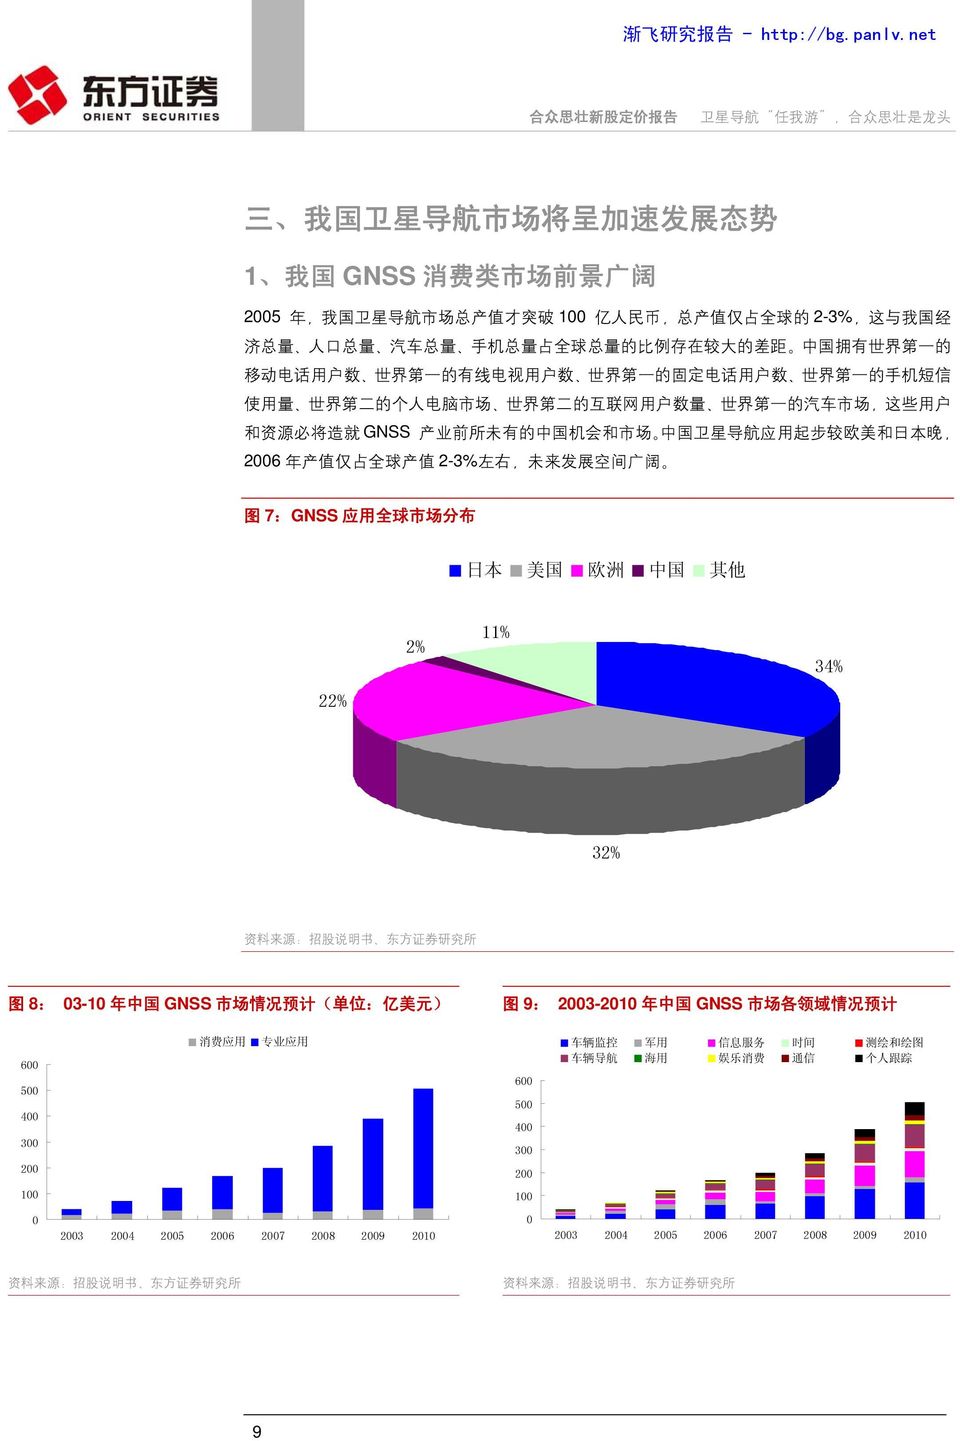 前 所 未 有 的 中 国 机 会 和 市 场 中 国 卫 星 导 航 应 用 起 步 较 欧 美 和 日 本 晚, 26 年 产 值 仅 占 全 球 产 值 2-3% 左 右, 未 来 发 展 空 间 广 阔 图 7:GNSS 应 用 全 球 市 场 分 布 日 本 美 国 欧 洲 中 国 其 他 2% 11% 34% 22% 32% 图 8: 3-1 年 中 国 GNSS 市 场 情 况 预